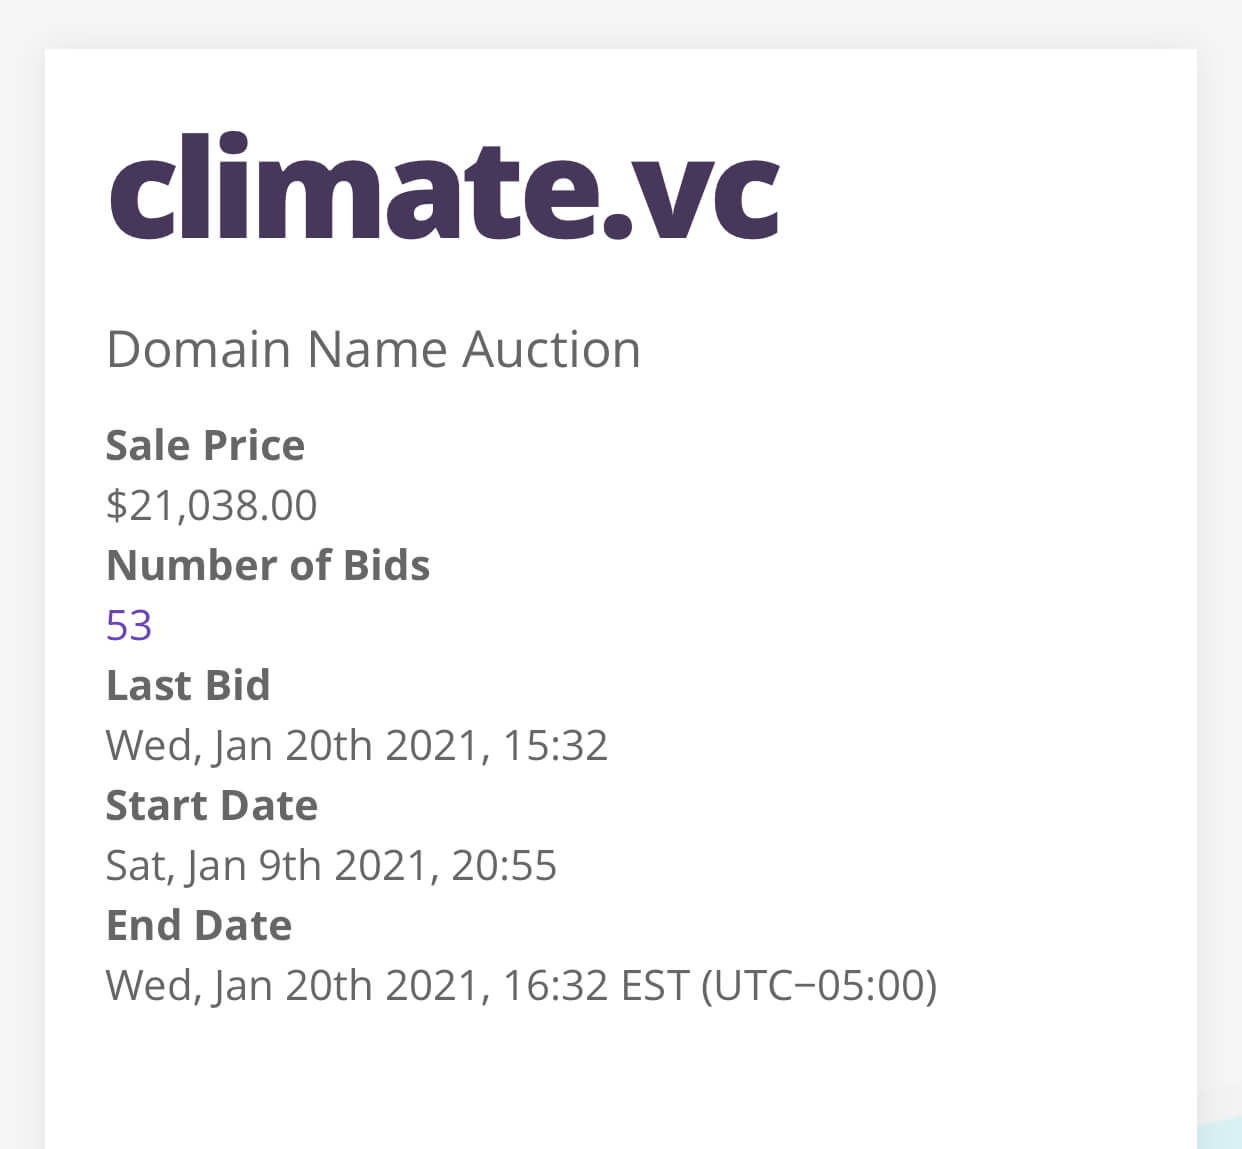 Climate.vc domain sale